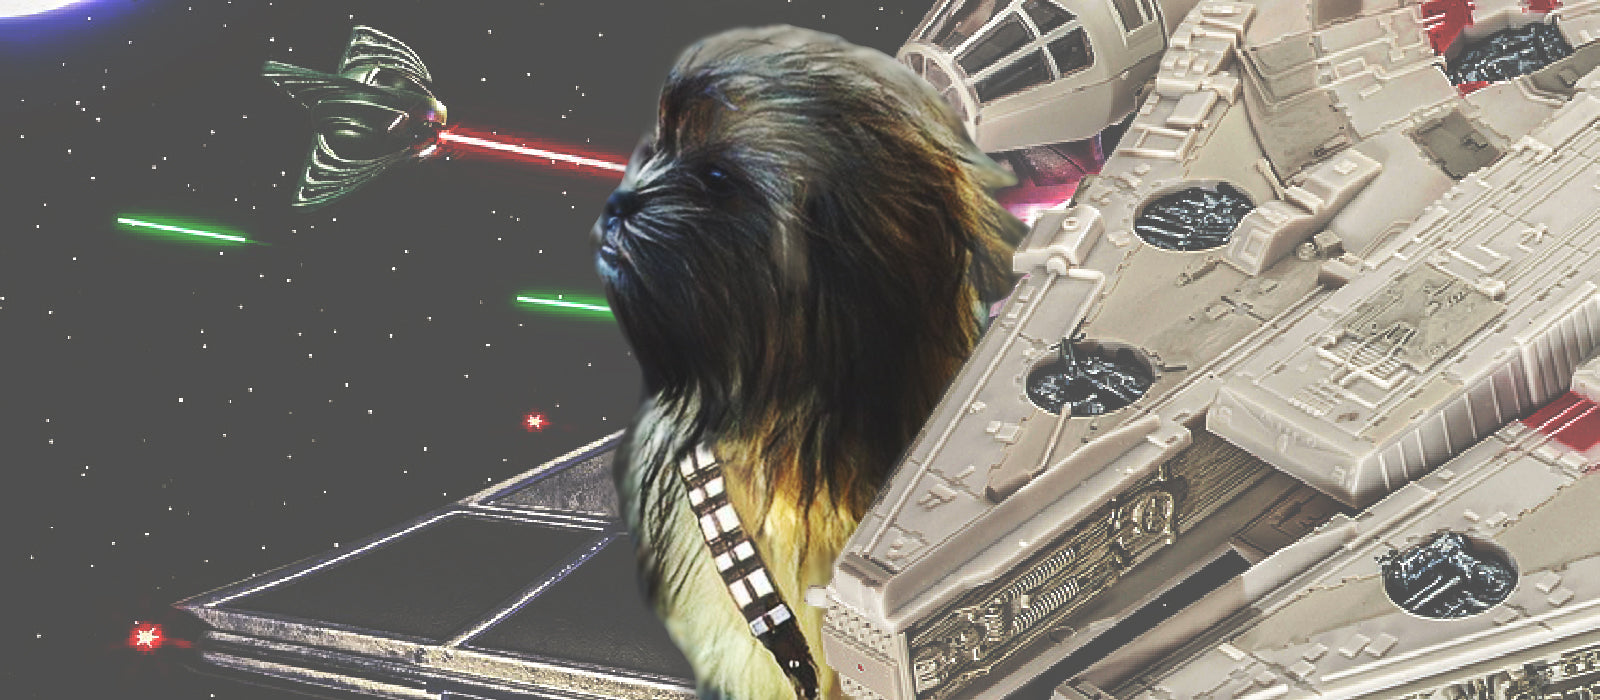 Star Wars Wookie “chewbacca” Sleeps For 18 Hours Sleepovation